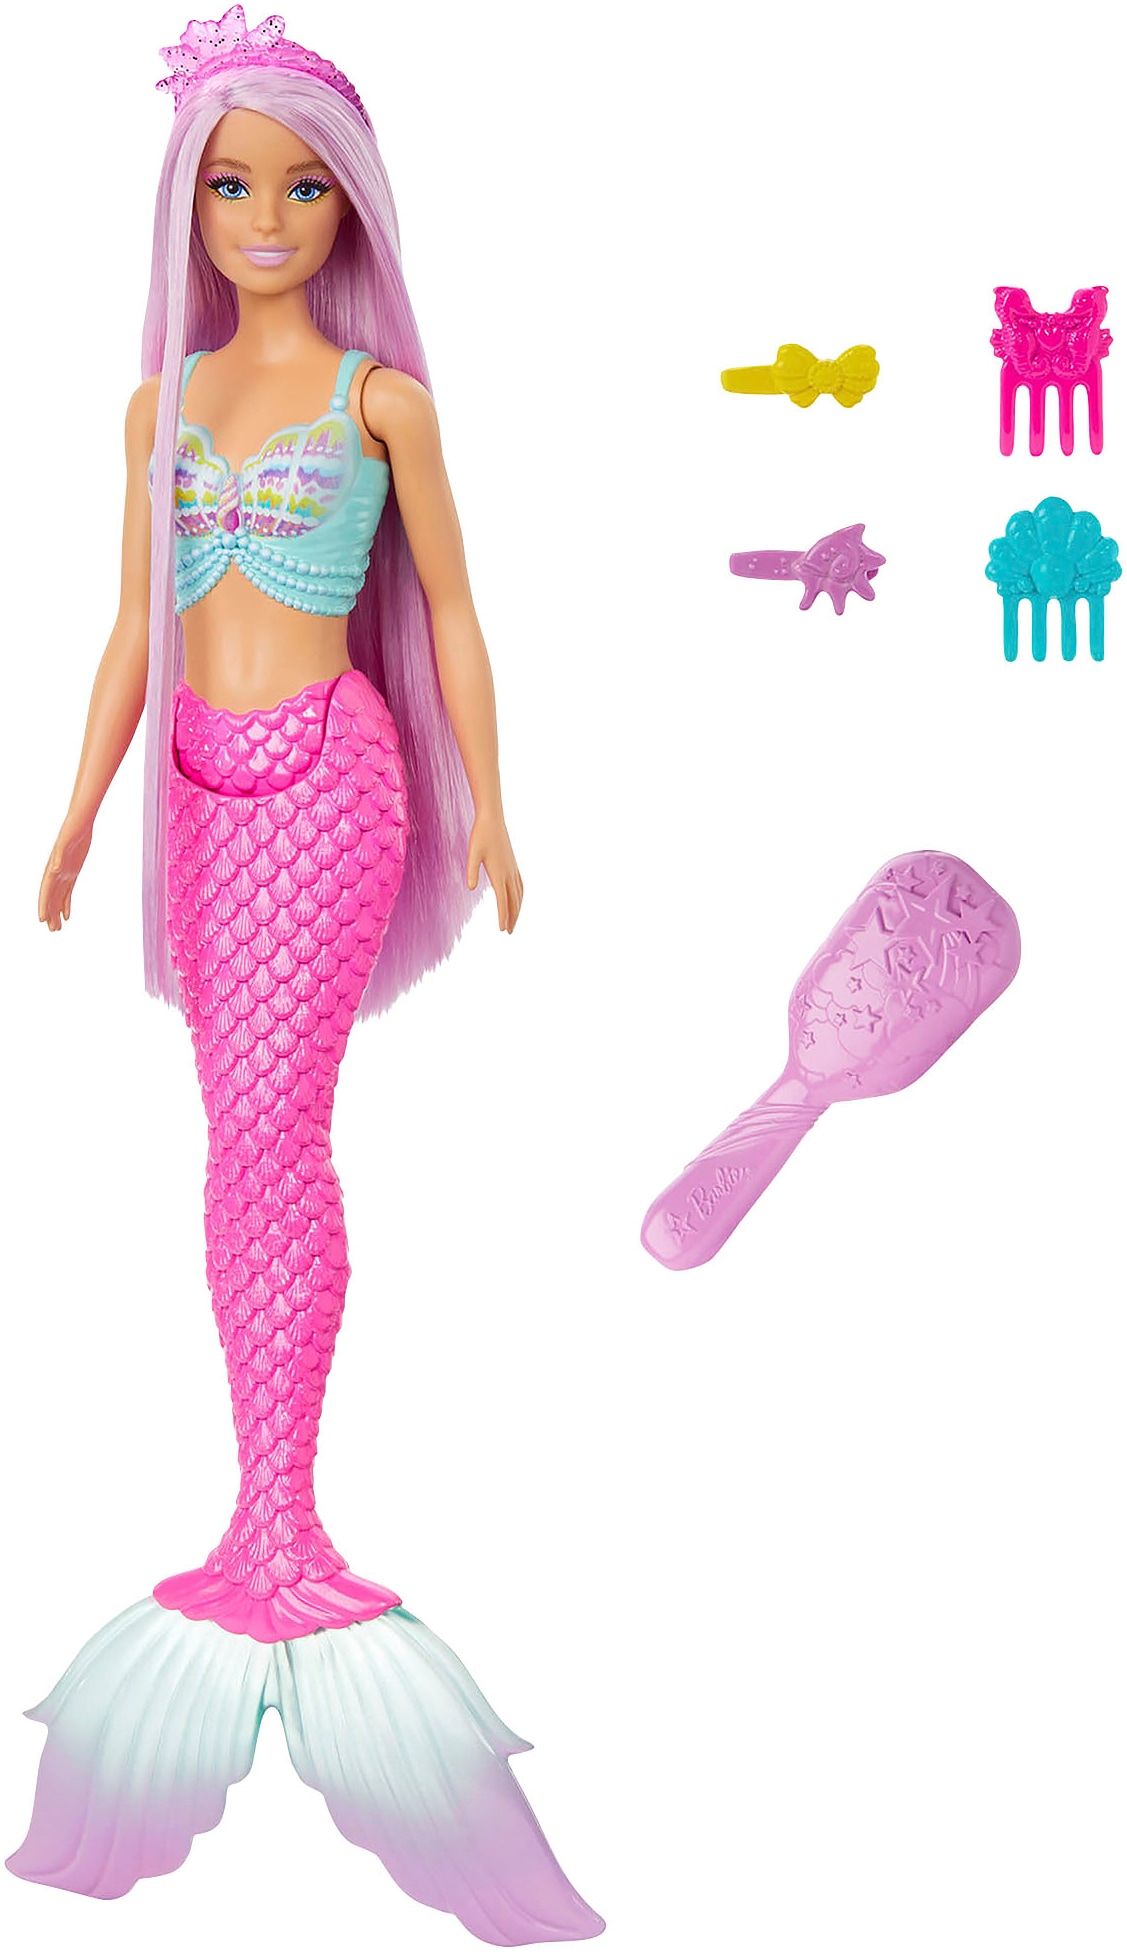 Meerjungfrauenpuppe »Meerjungfrau mit langem rosafarbenem Haar«